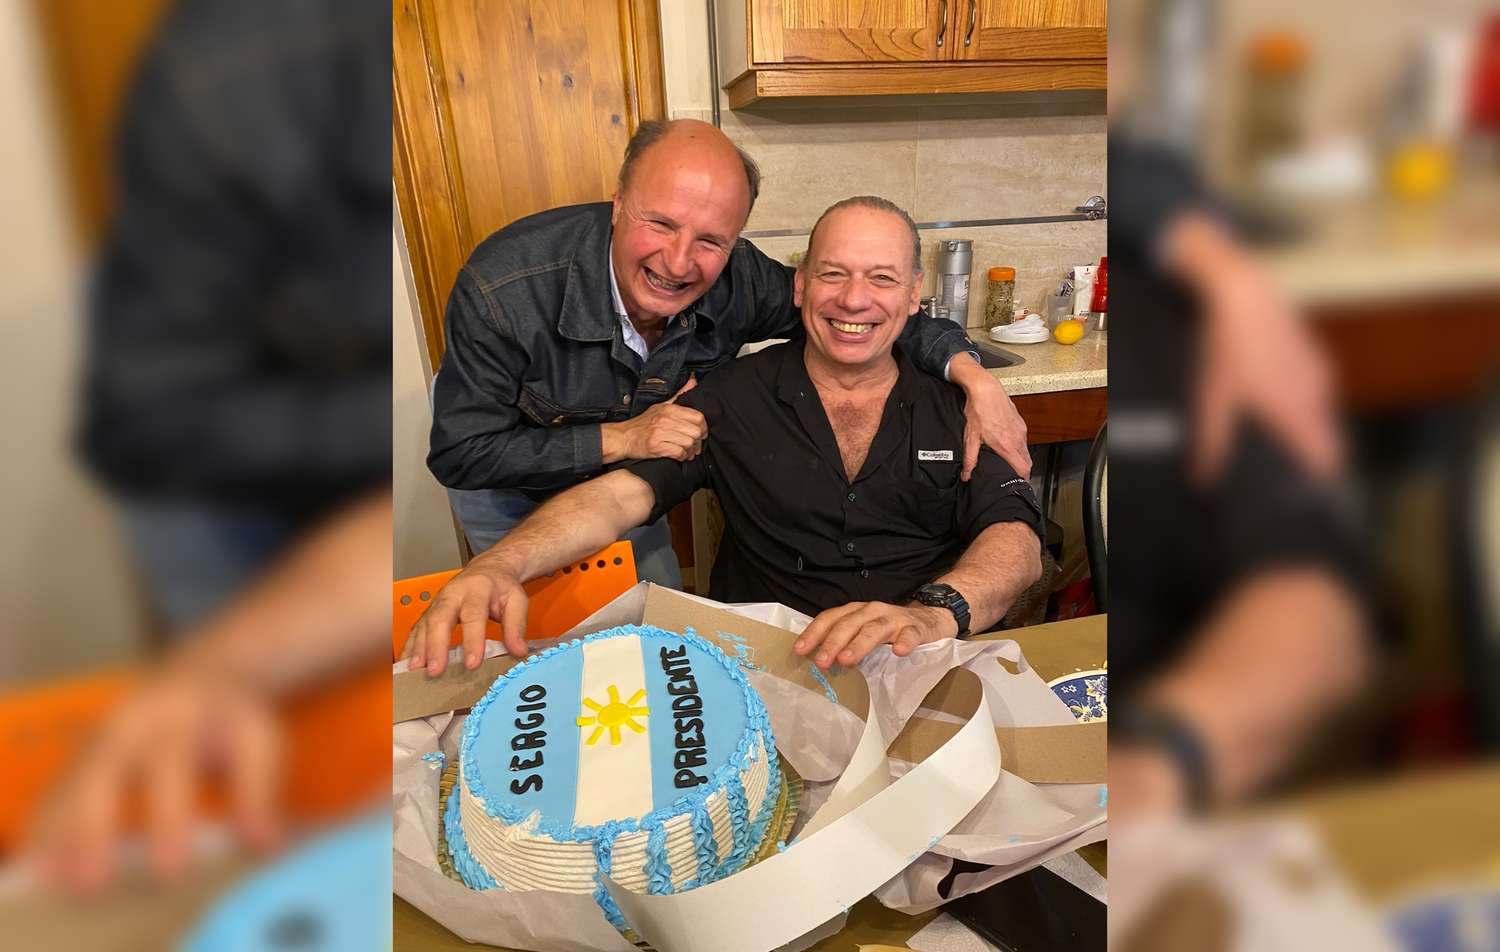 Tras entregar patrulleros, Berni almorzó con Guacone: lechón, vino y una torta “Sergio Presidente”